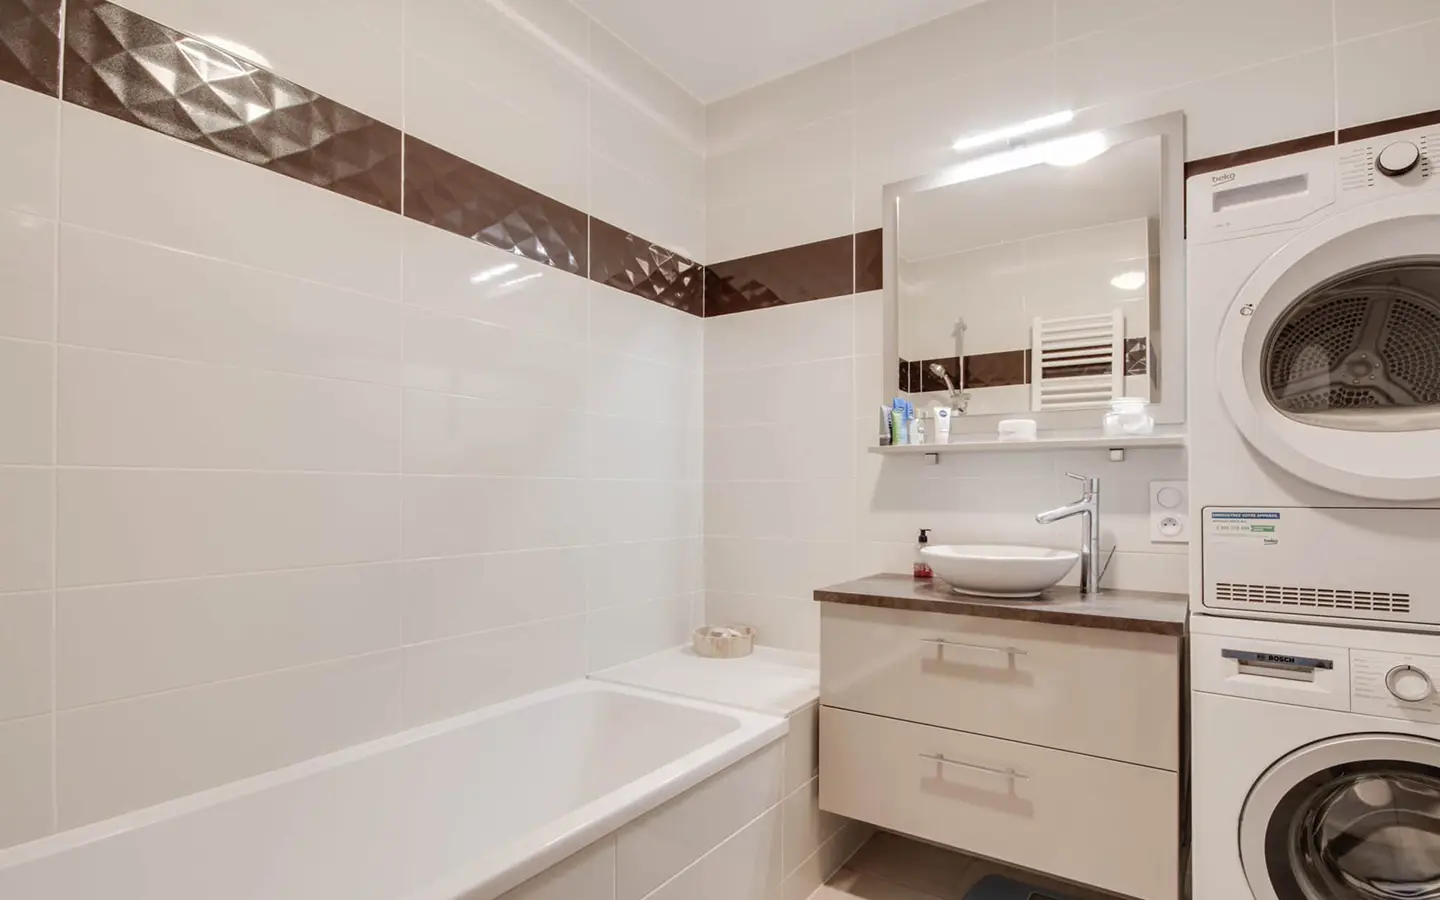 Achat immobilier appartement t3 avec terrasse rénovée Annecy-le-vieux salle de bains